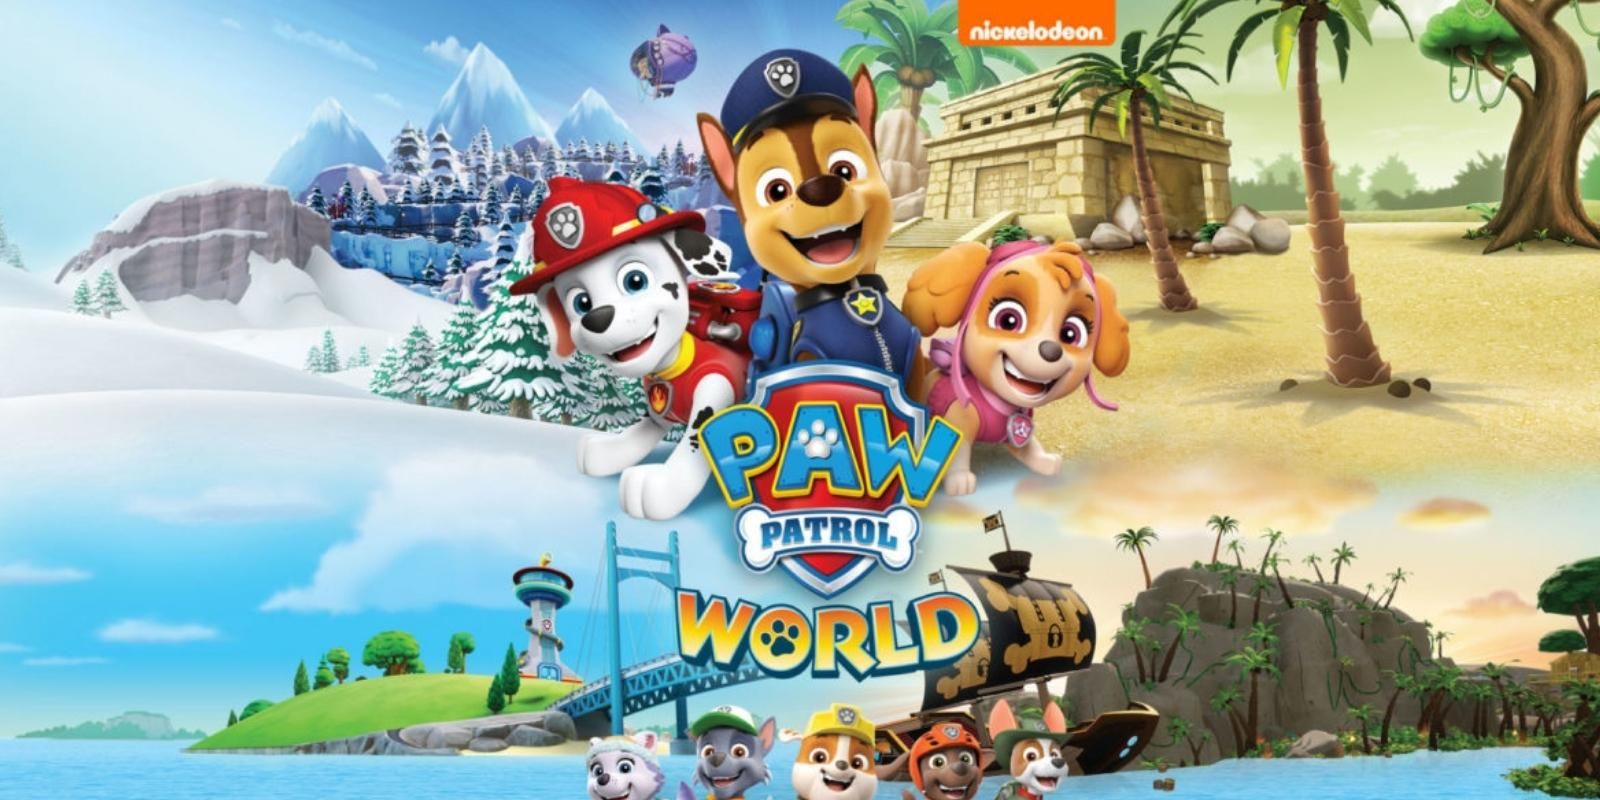 “La introducción de un niño a las tendencias de los juegos modernos”: Paw Patrol World Review